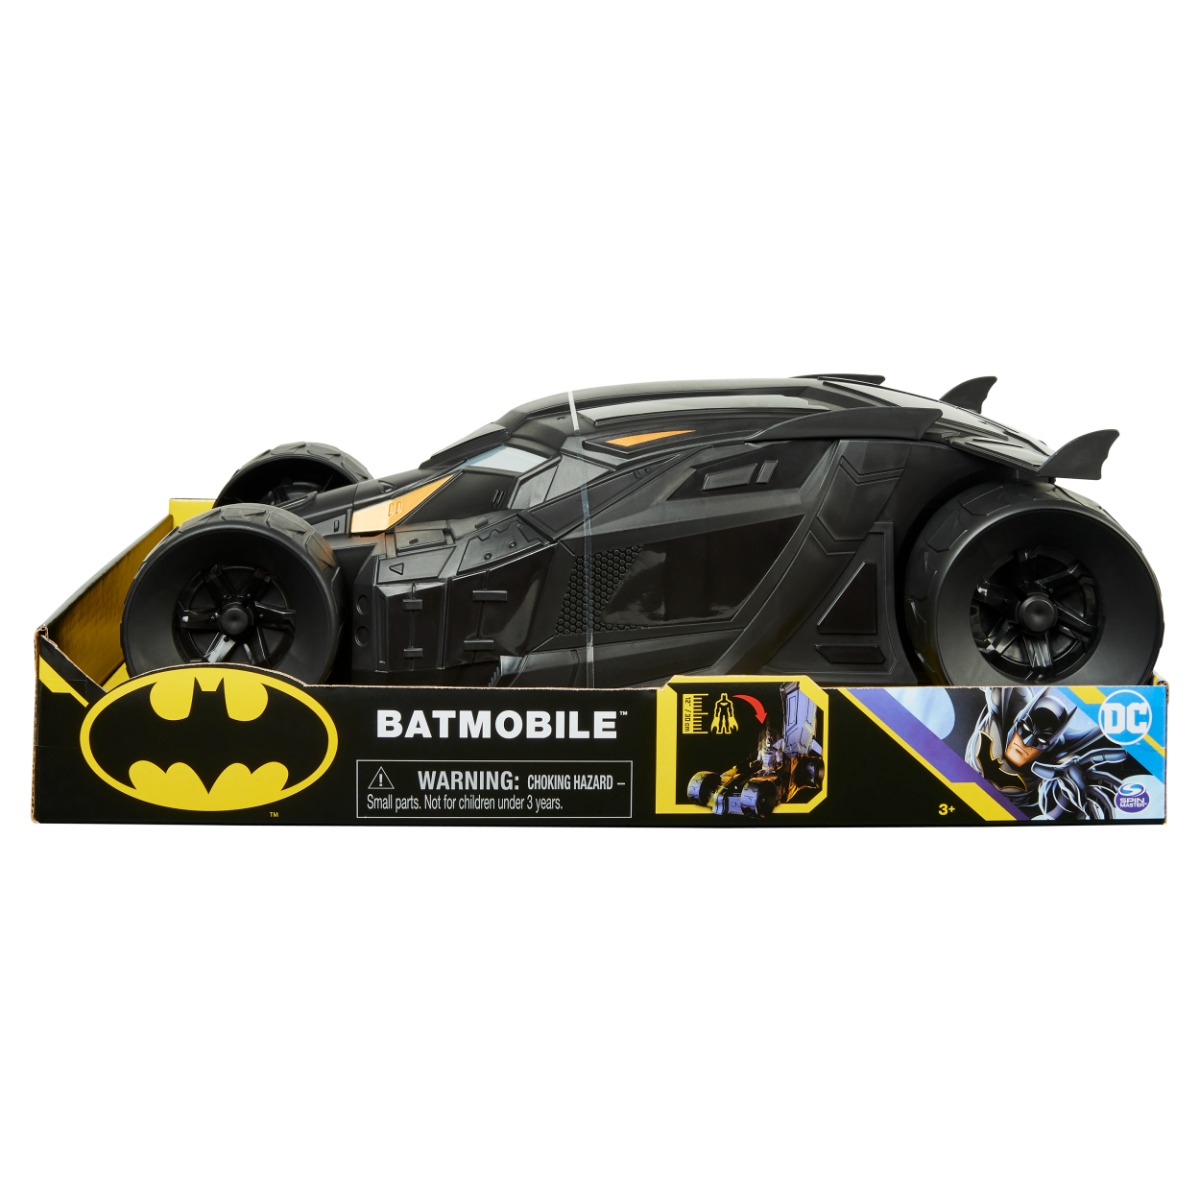 Masina lui Batman, DC Universe, Batmobile Batman imagine noua responsabilitatesociala.ro